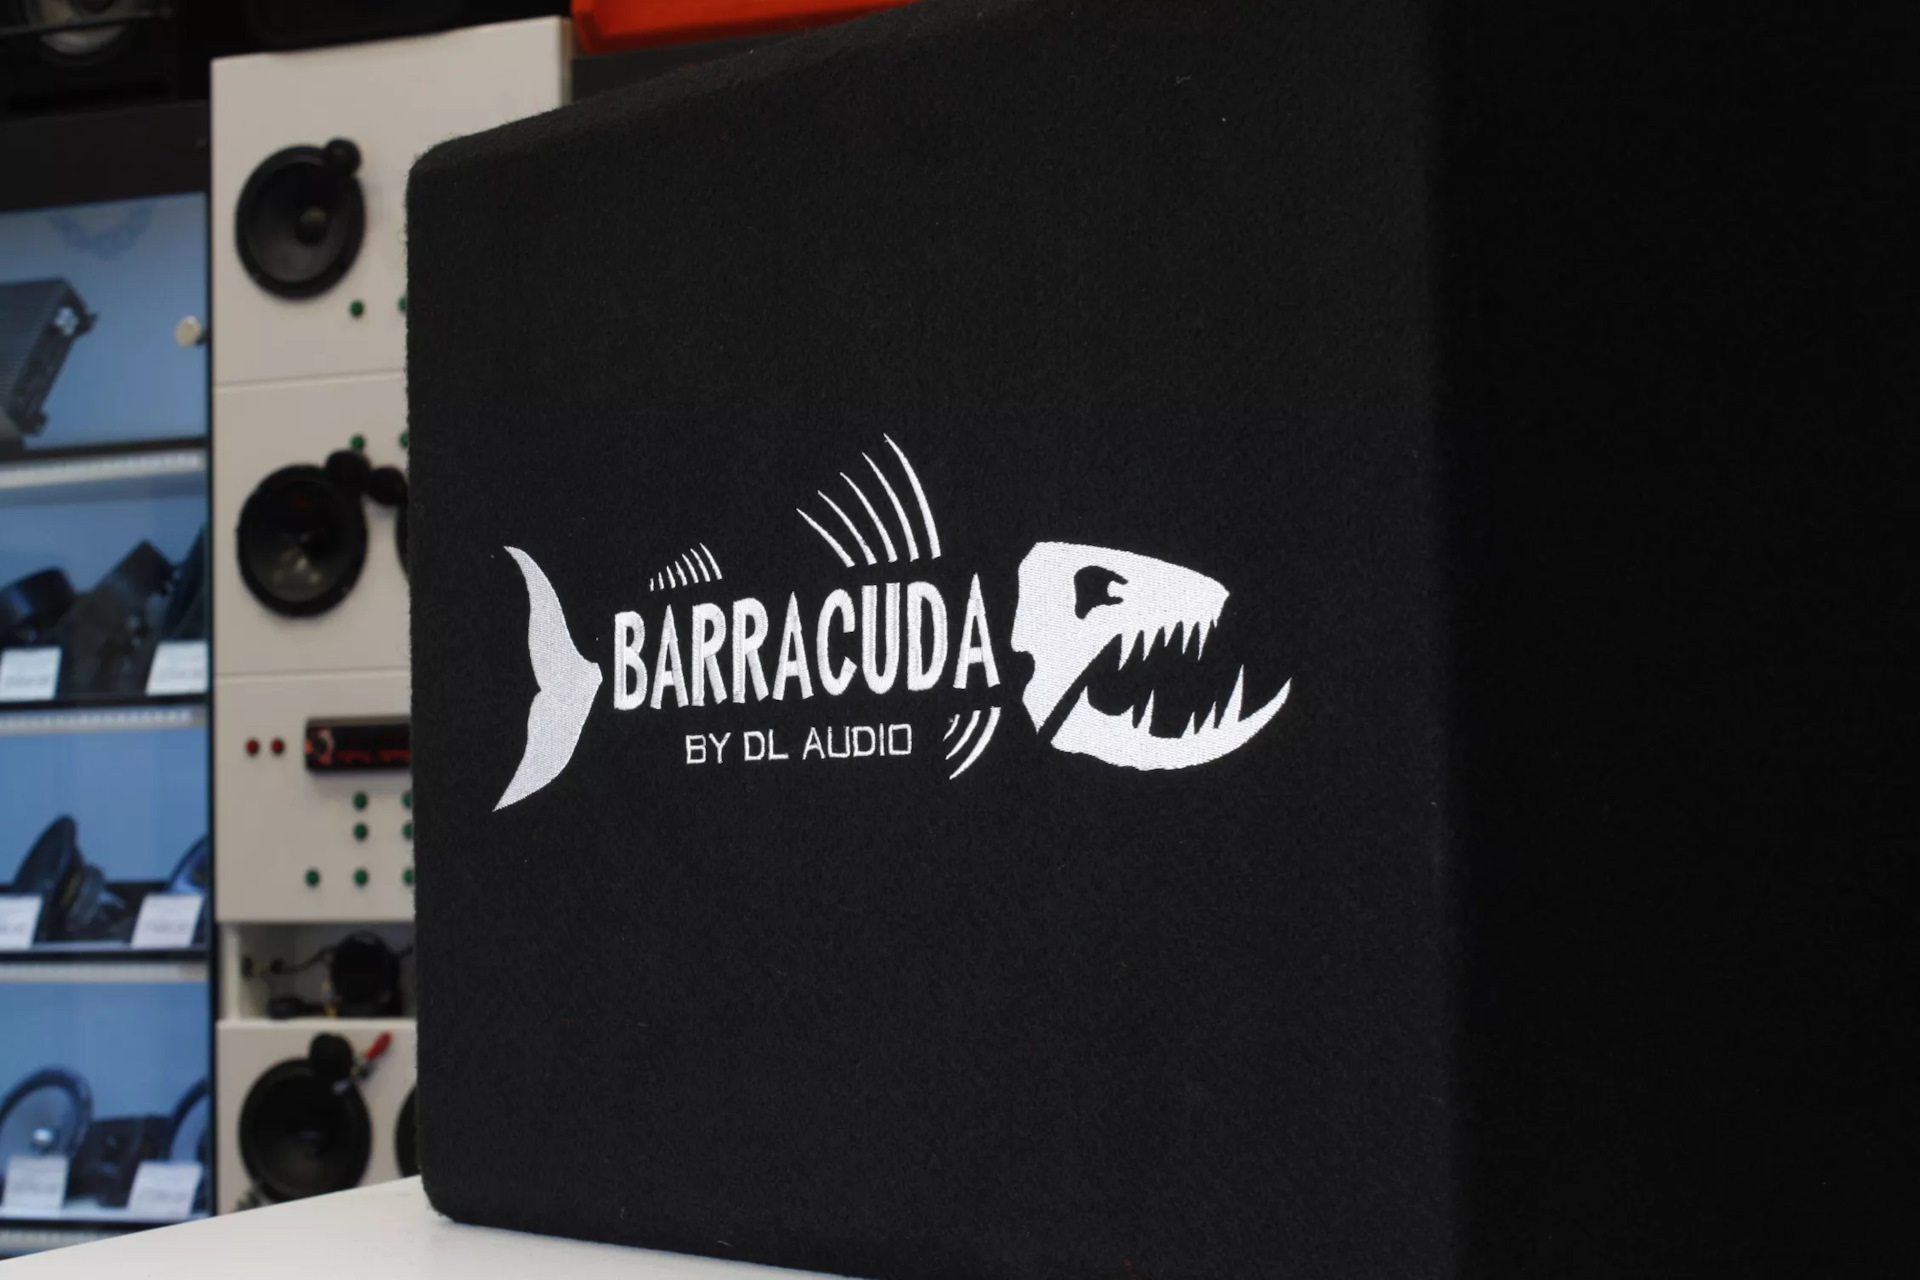 Audio barracuda 8 flat. DL Audio Barracuda 12a. Barracuda 12a Flat. Усилитель DL Audio Barracuda 4.65. Сабвуфер DL Audio Barracuda 10 Flat подключение.